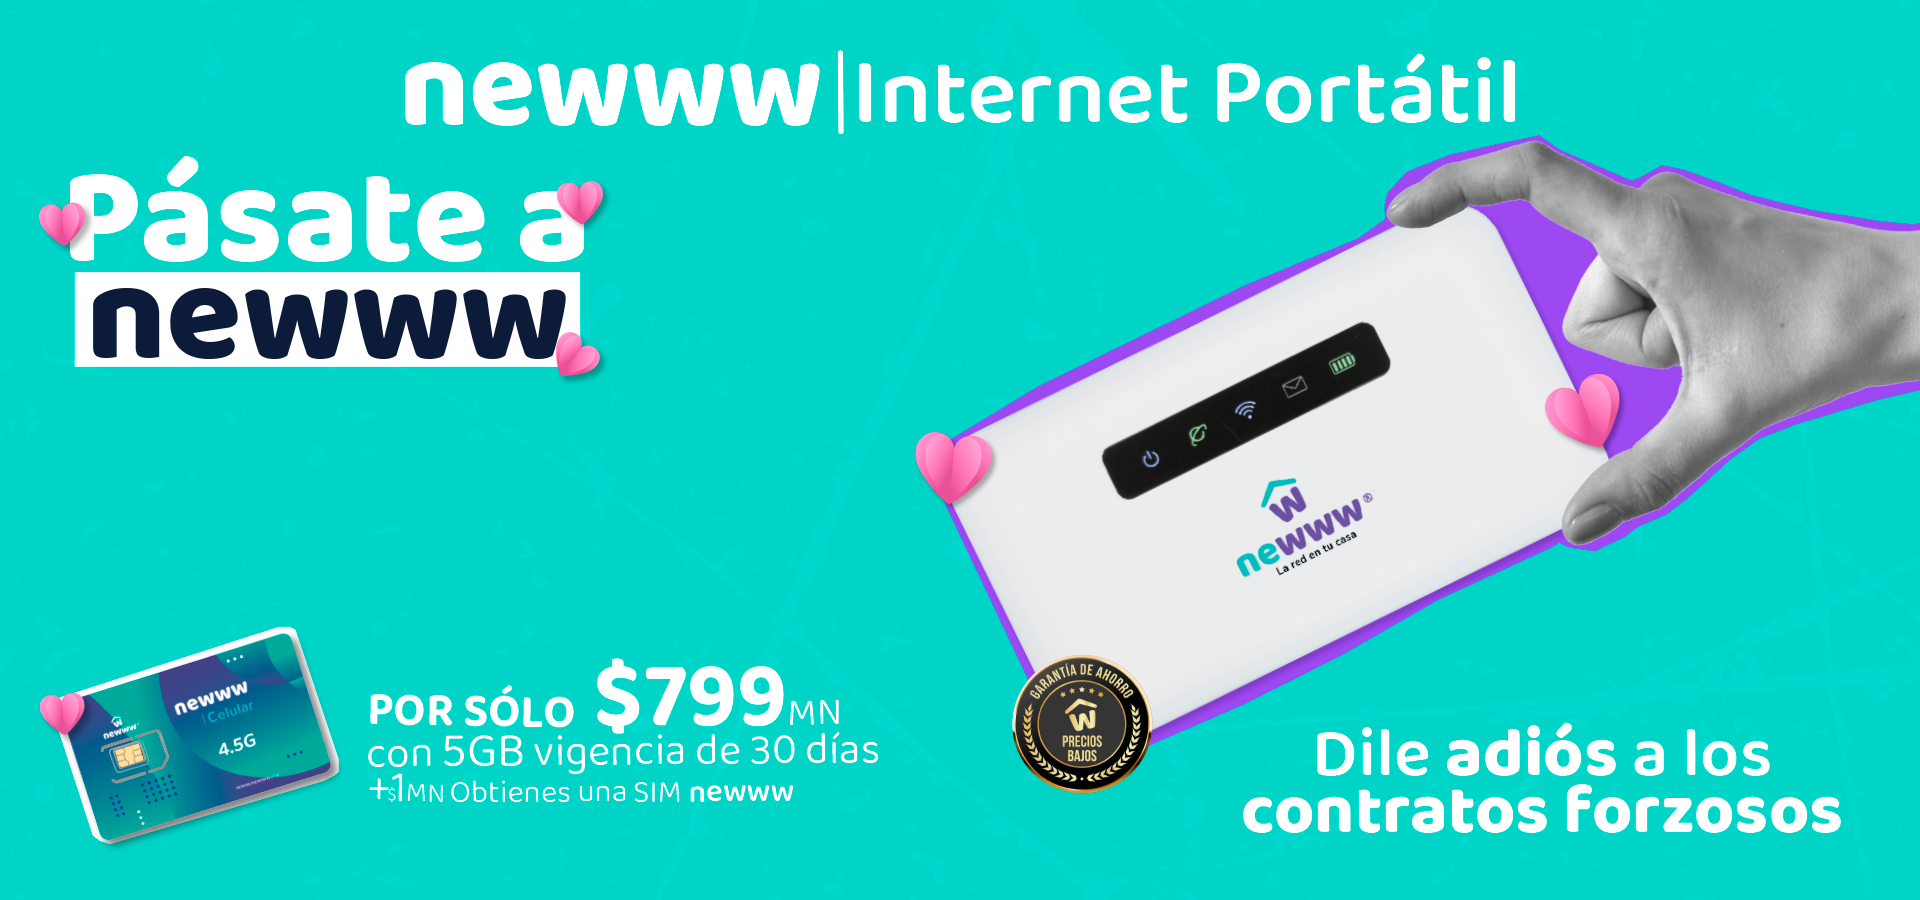 Newww® on X: Con el nuevo servicio de Internet portátil NewwwFi